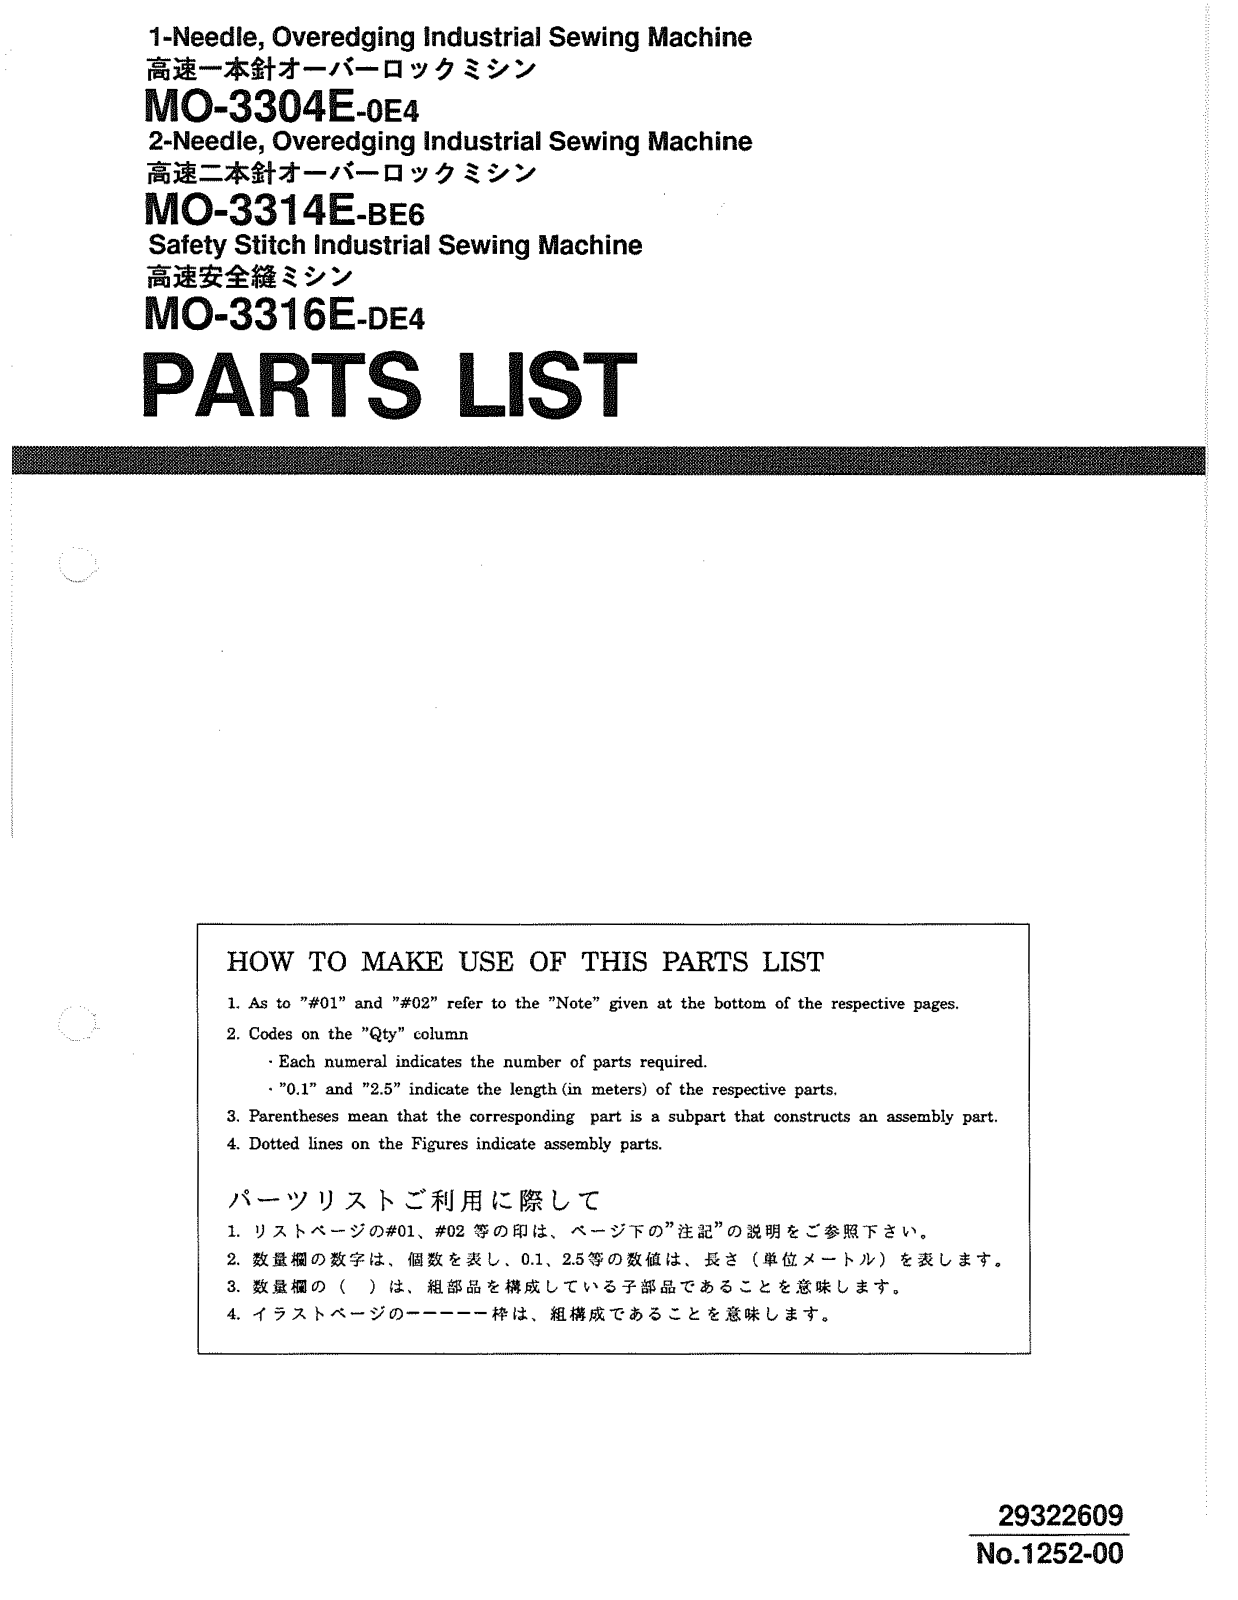 Juki MO-3304E-OE4, MO-3314E-BE4, MO-3316E-DE4 Parts List